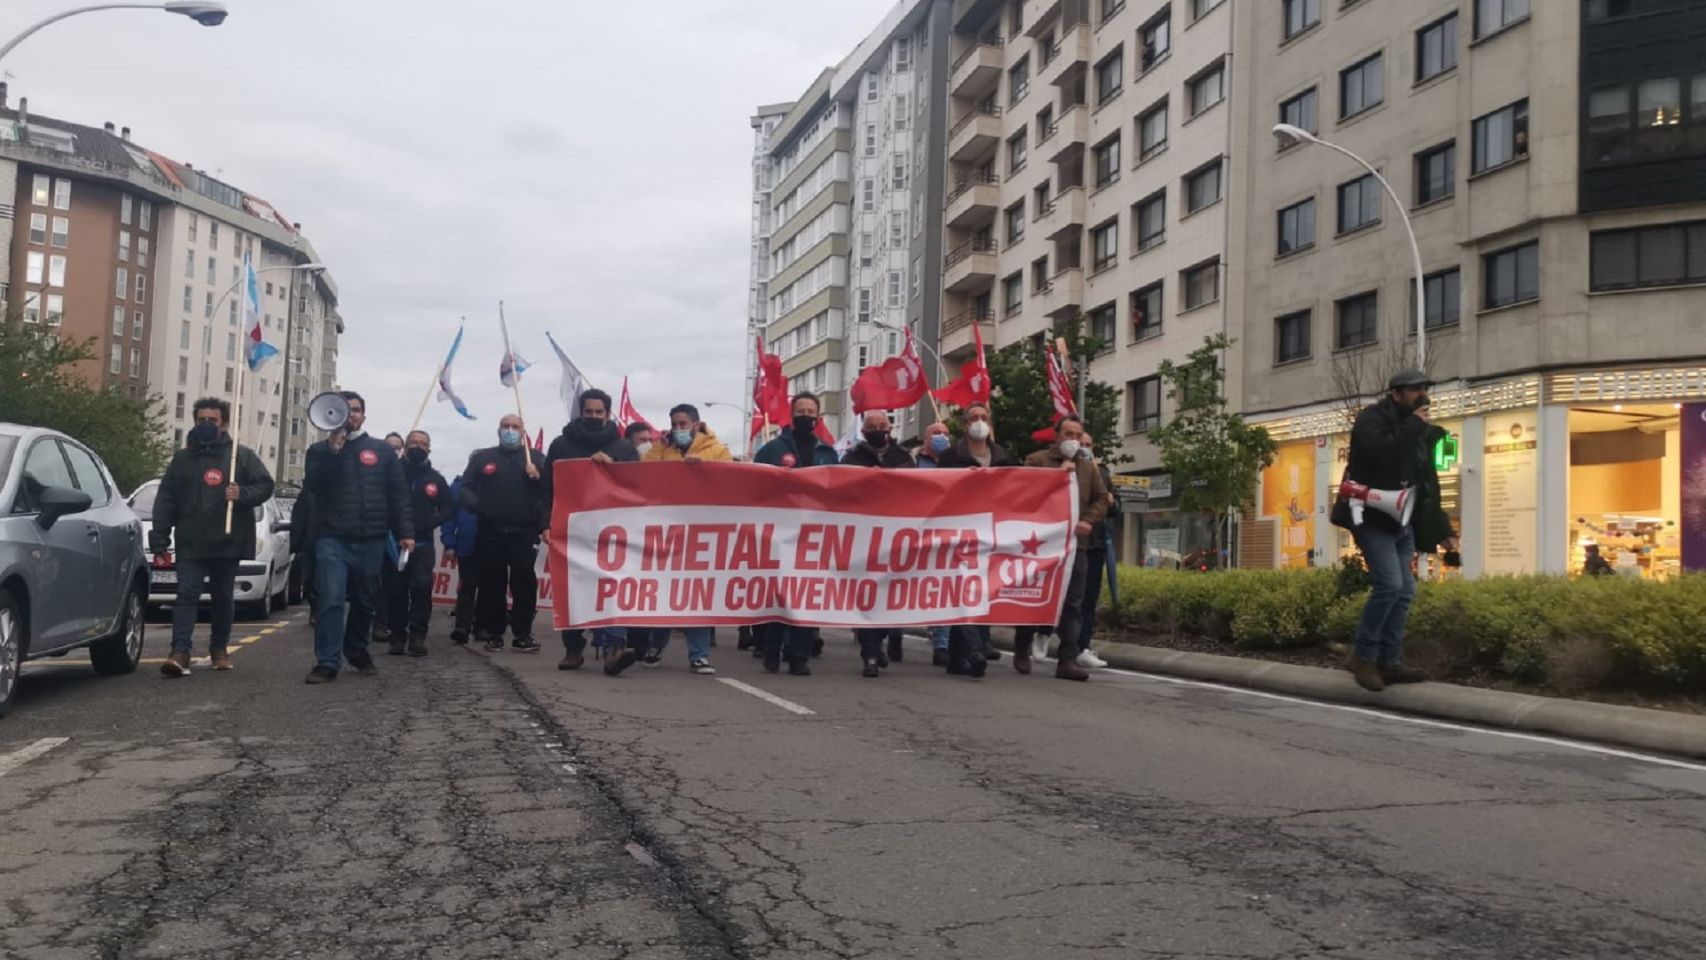 Trabajadores del metal exigen en A Coruña "un convenio digno".